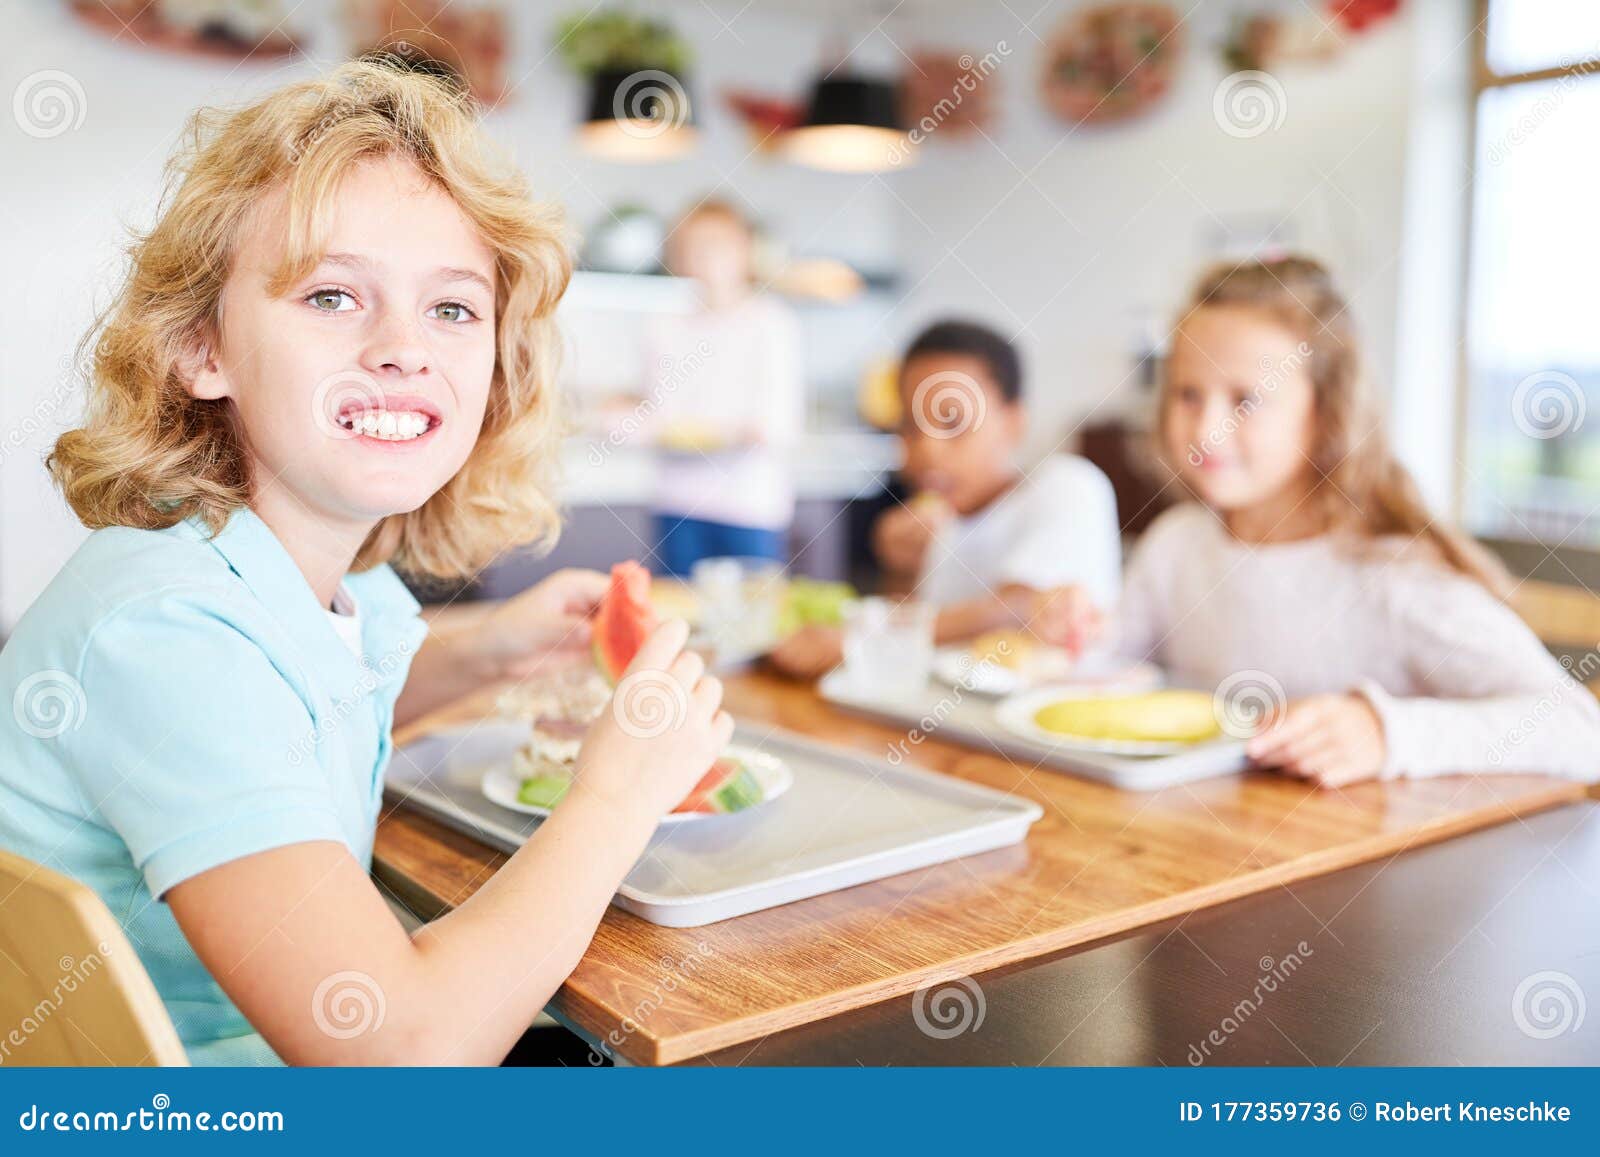 Children eat in school canteen Royalty Free Vector Image